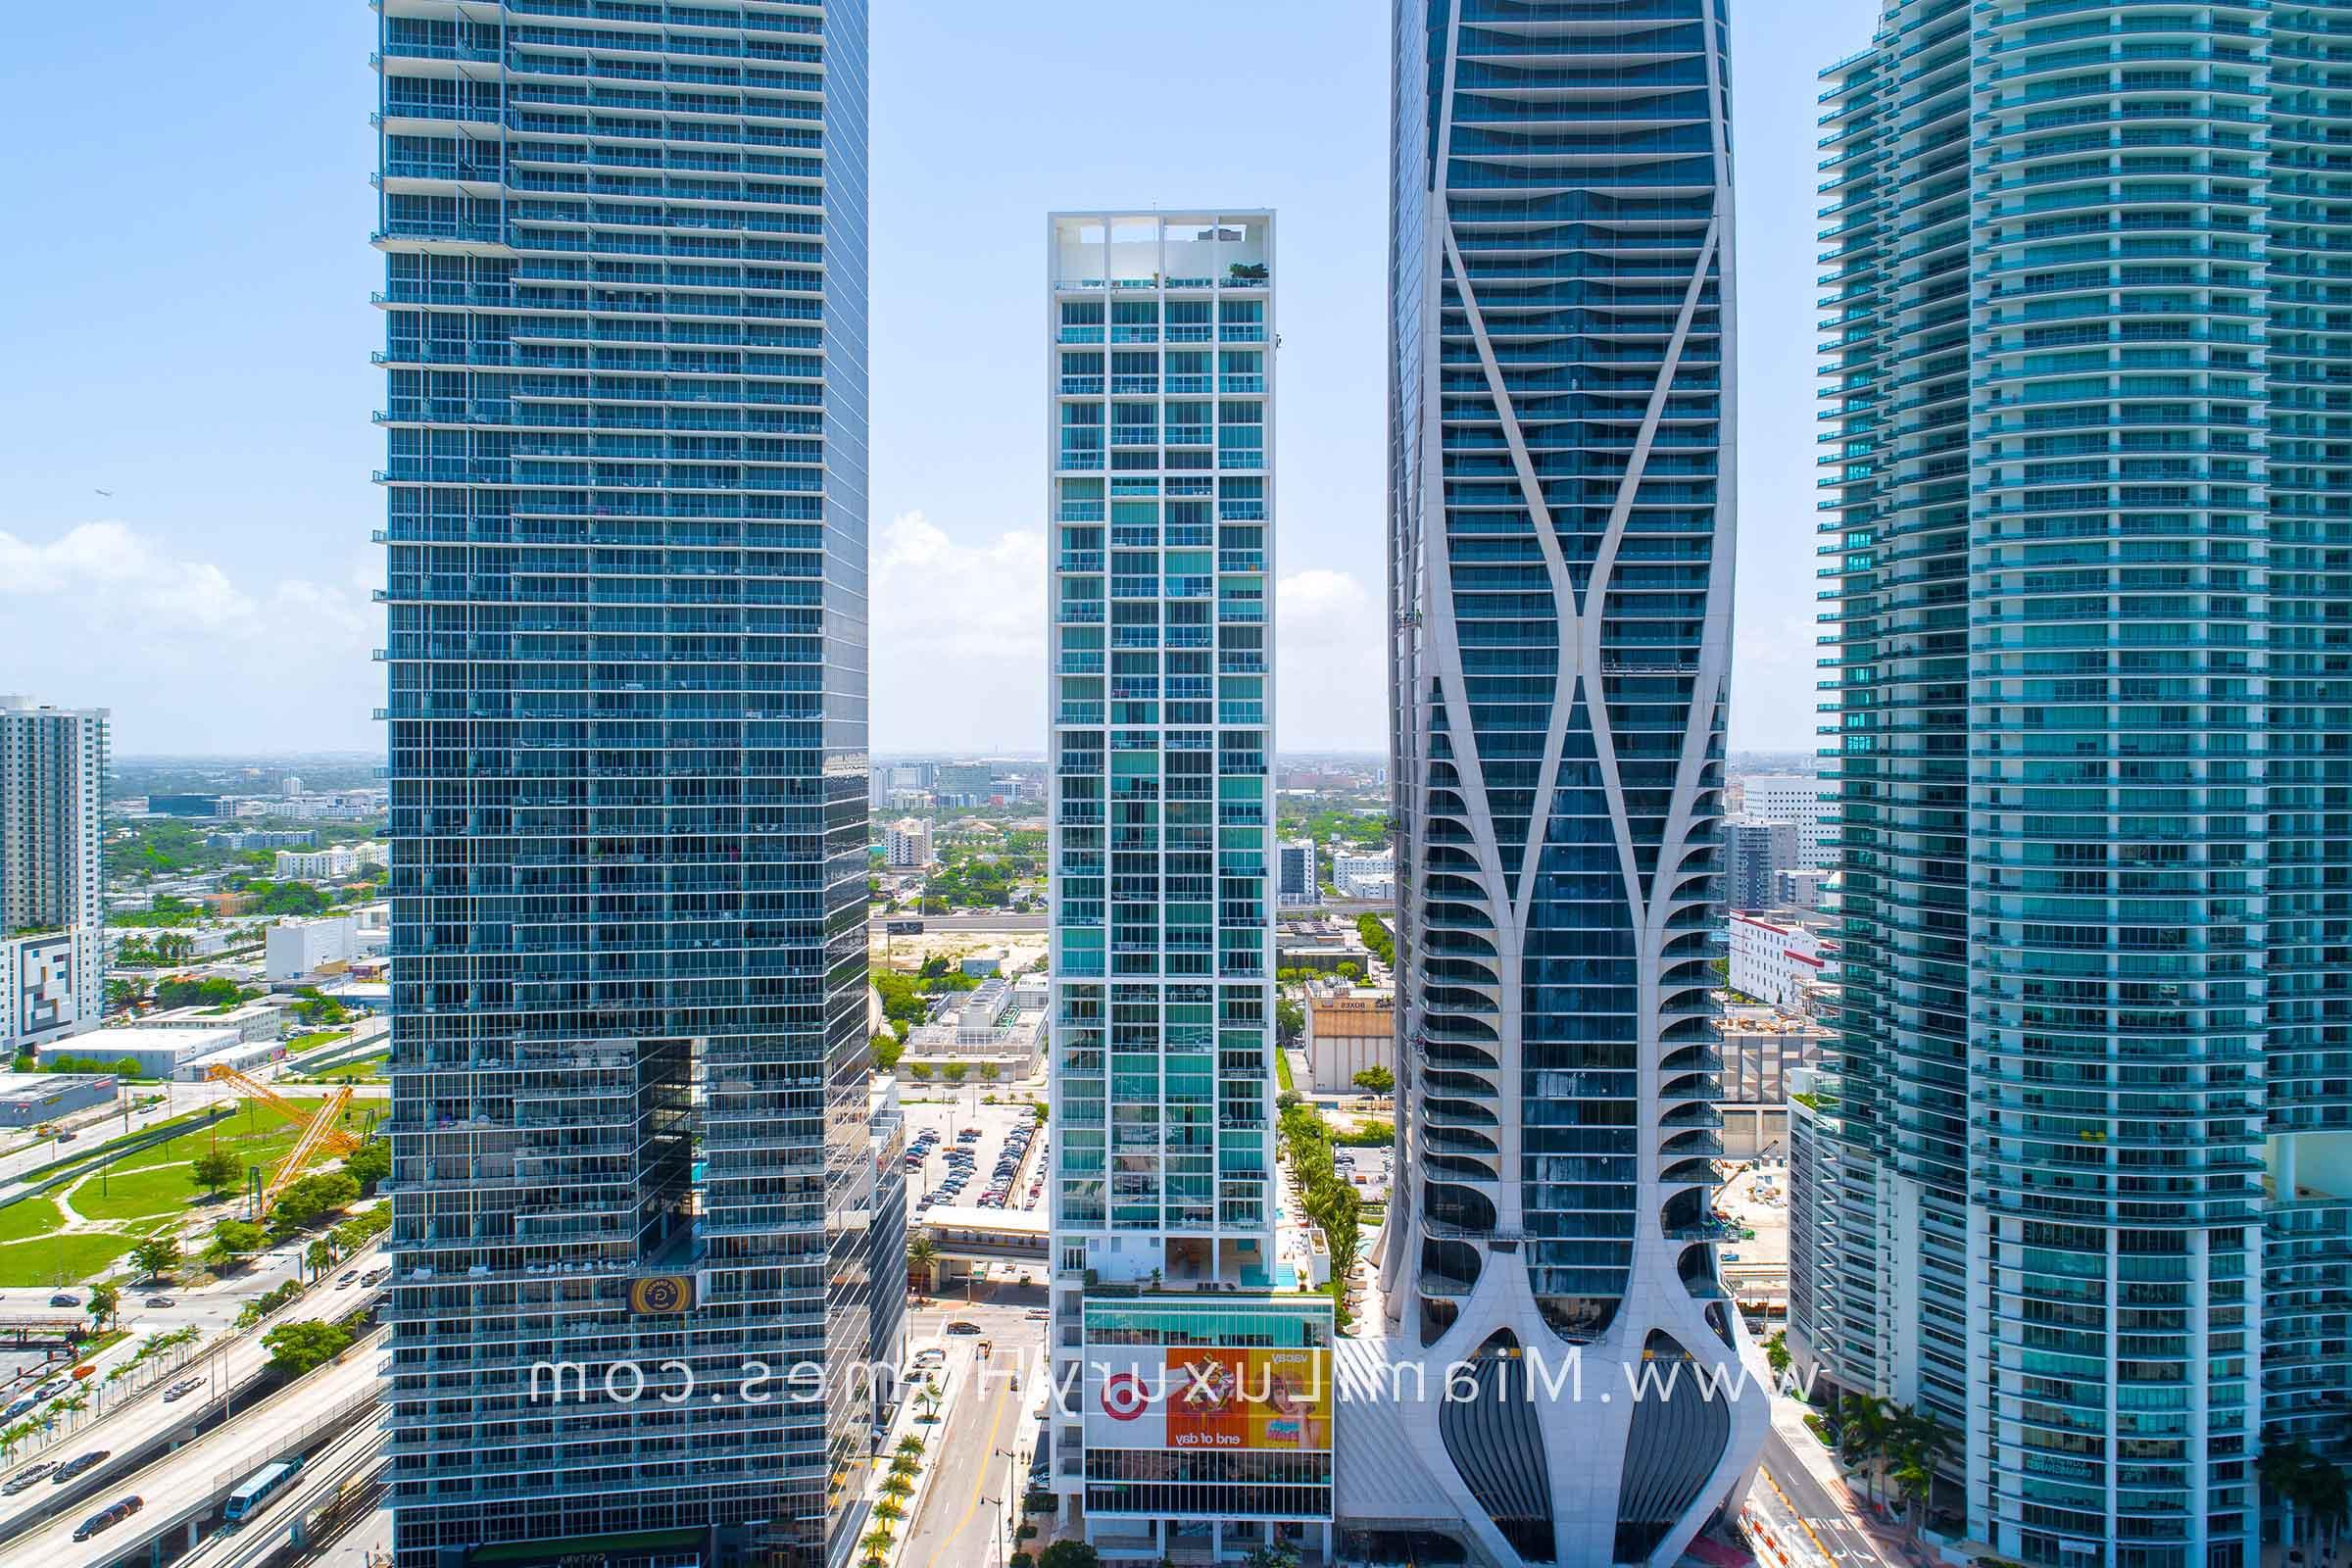 迈阿密市中心的十博物馆公园公寓大楼